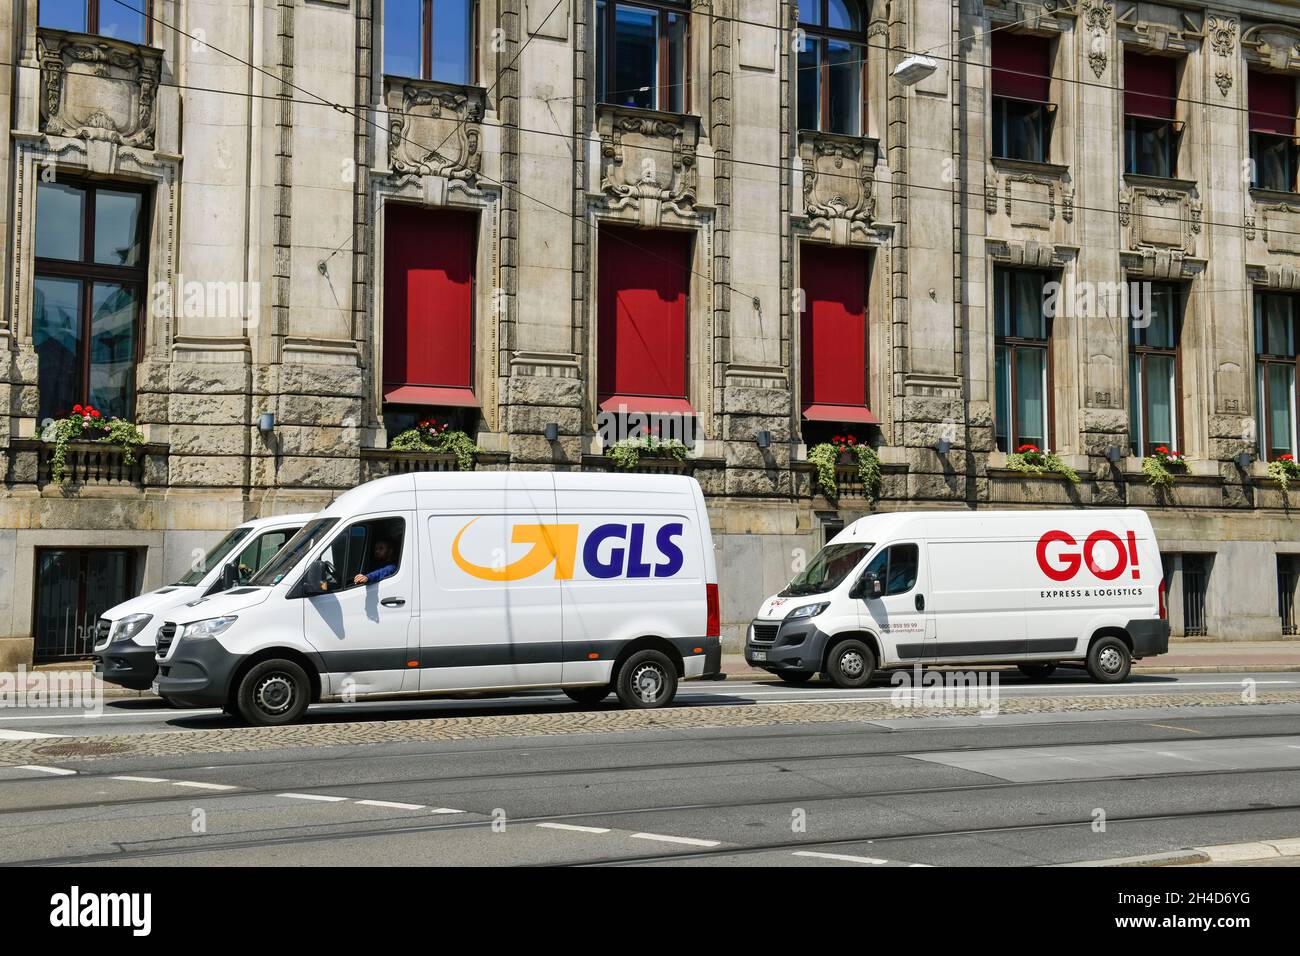 Lieferwagen GLS und GO!, Am Brill, Bremen, Deutschland Stock Photo